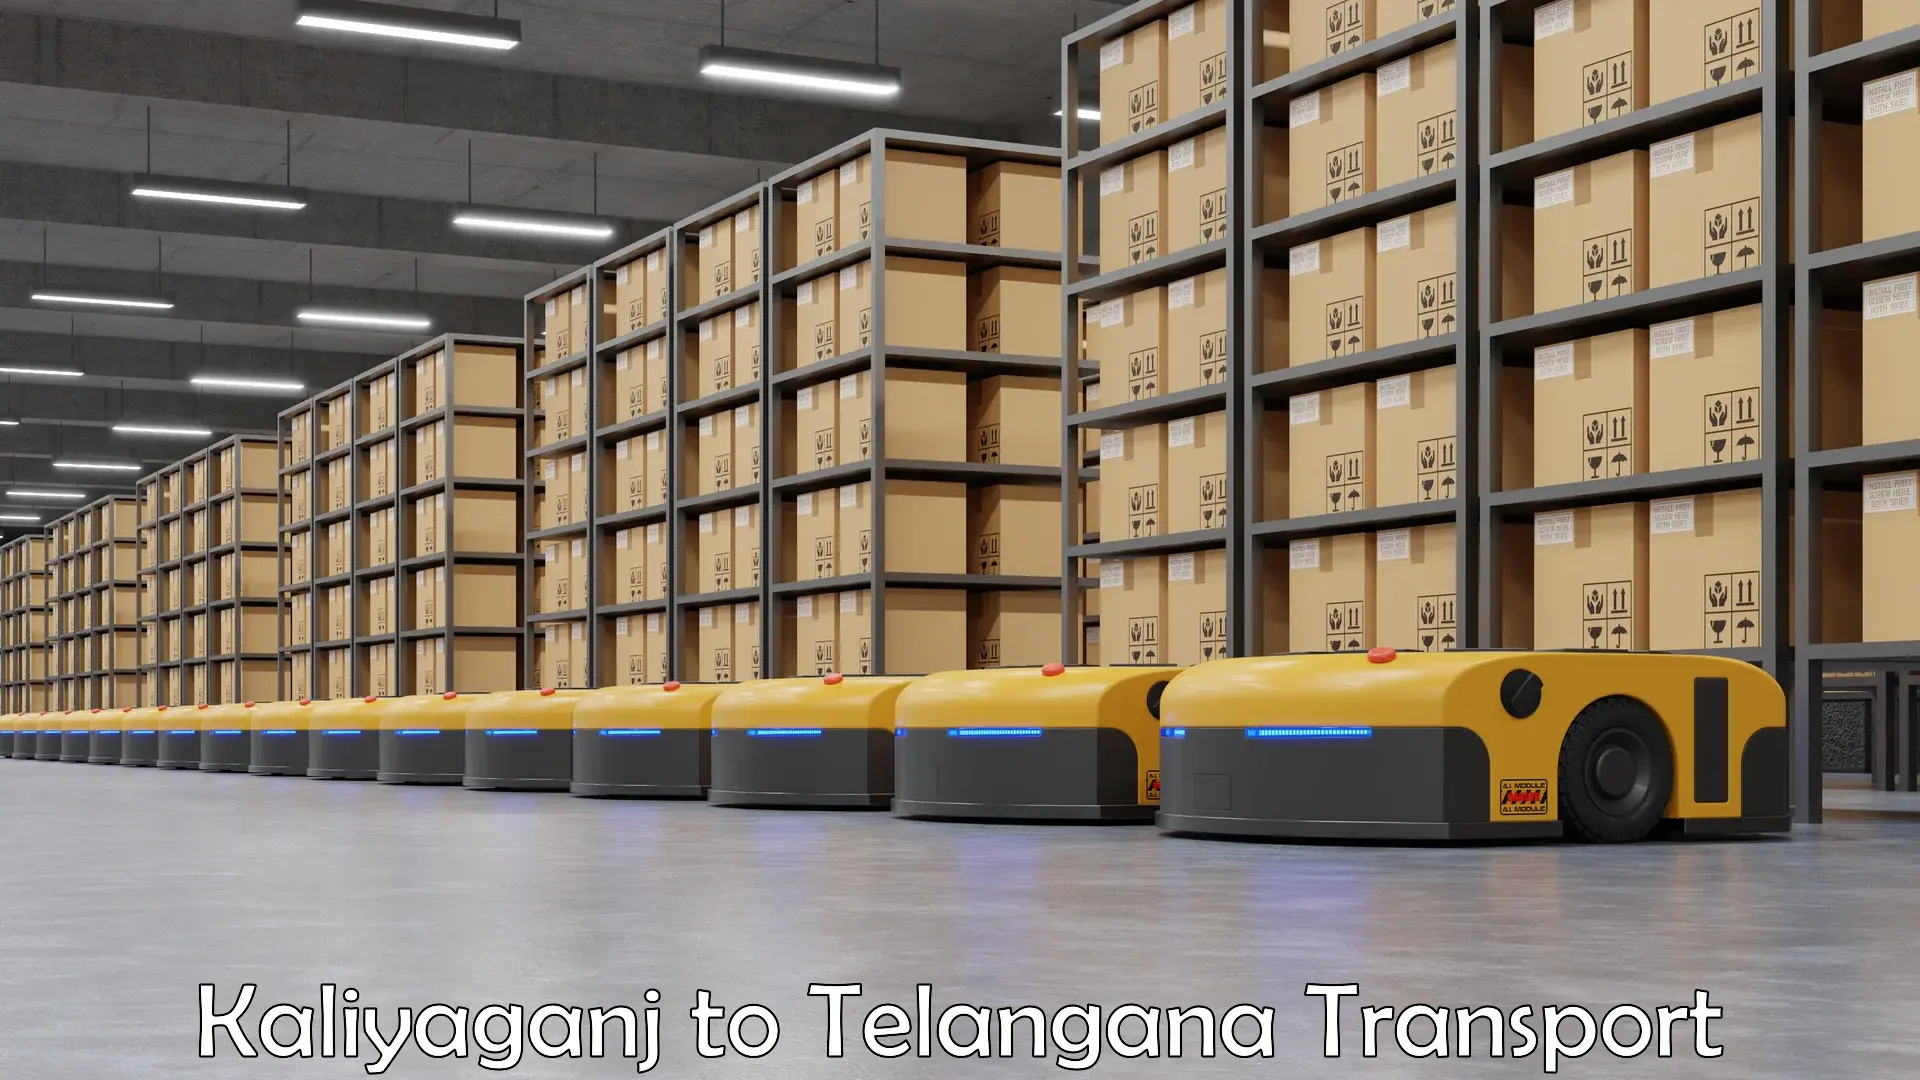 Material transport services Kaliyaganj to Manthani